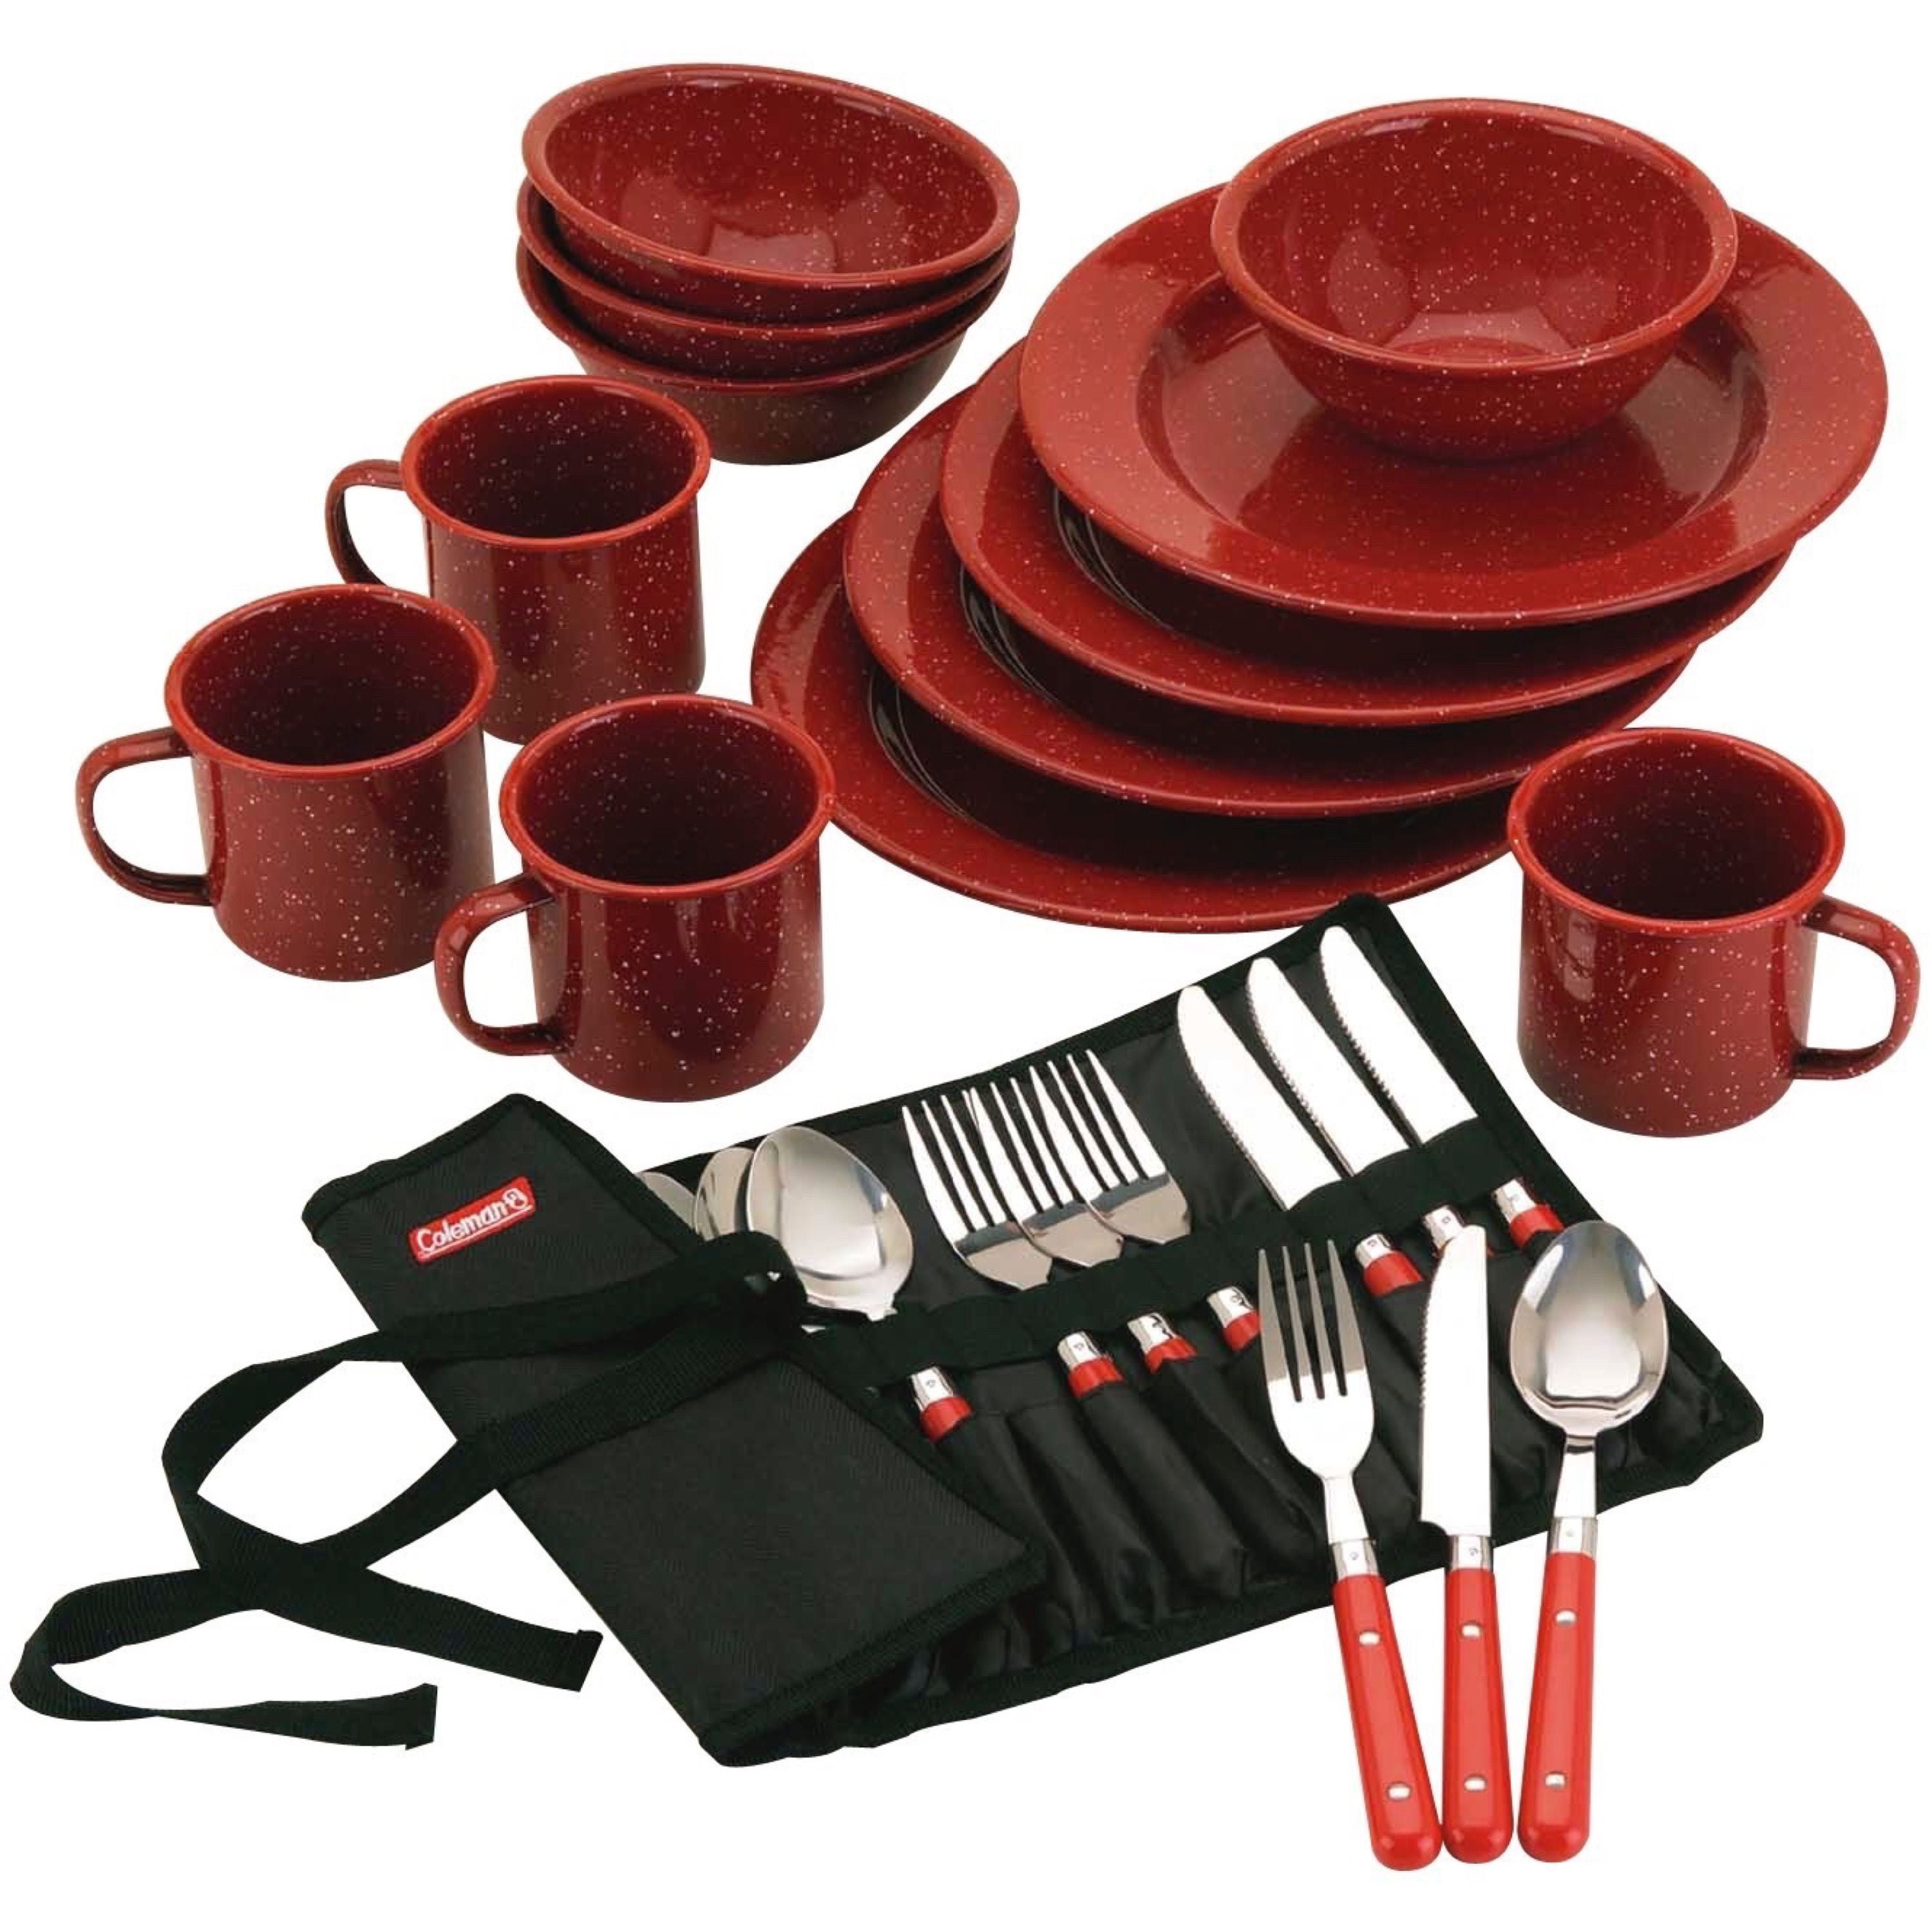 Купить красную посуду. Кухонная посуда. Современная посуда для кухни. Набор посуды кухонный. Наборы столовой посуды для кухни.